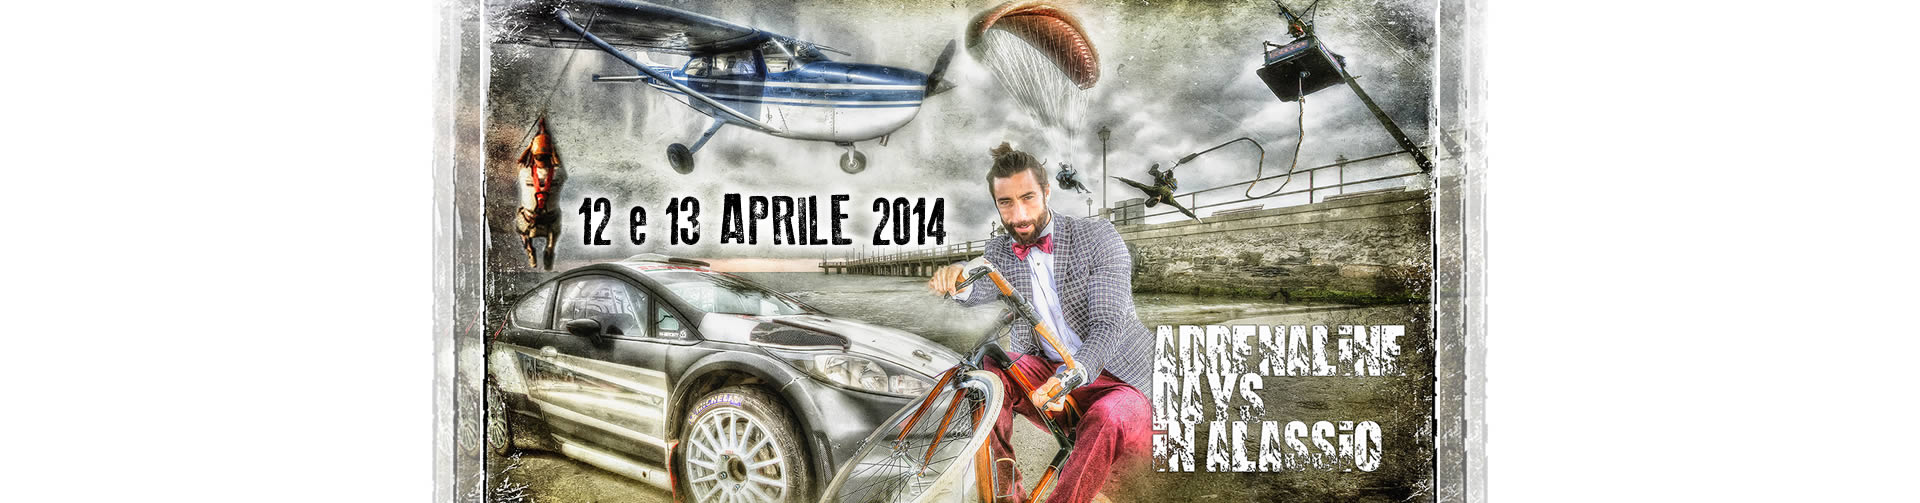 Adrenaline Days 12 e 13 aprile 2014